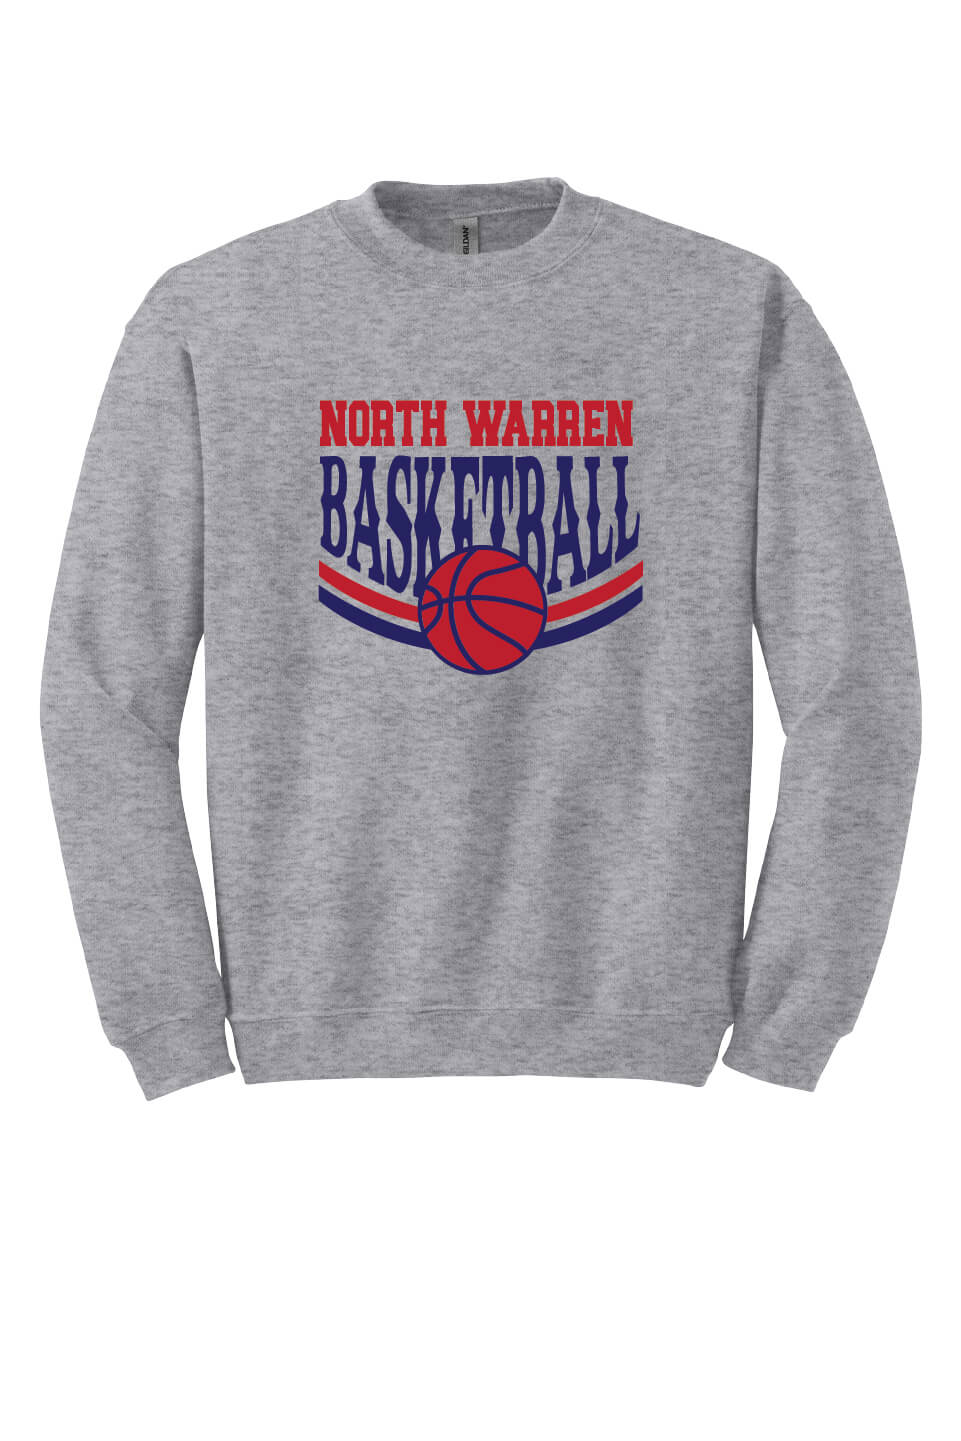 NW Basketball Crewneck Sweatshirt gray